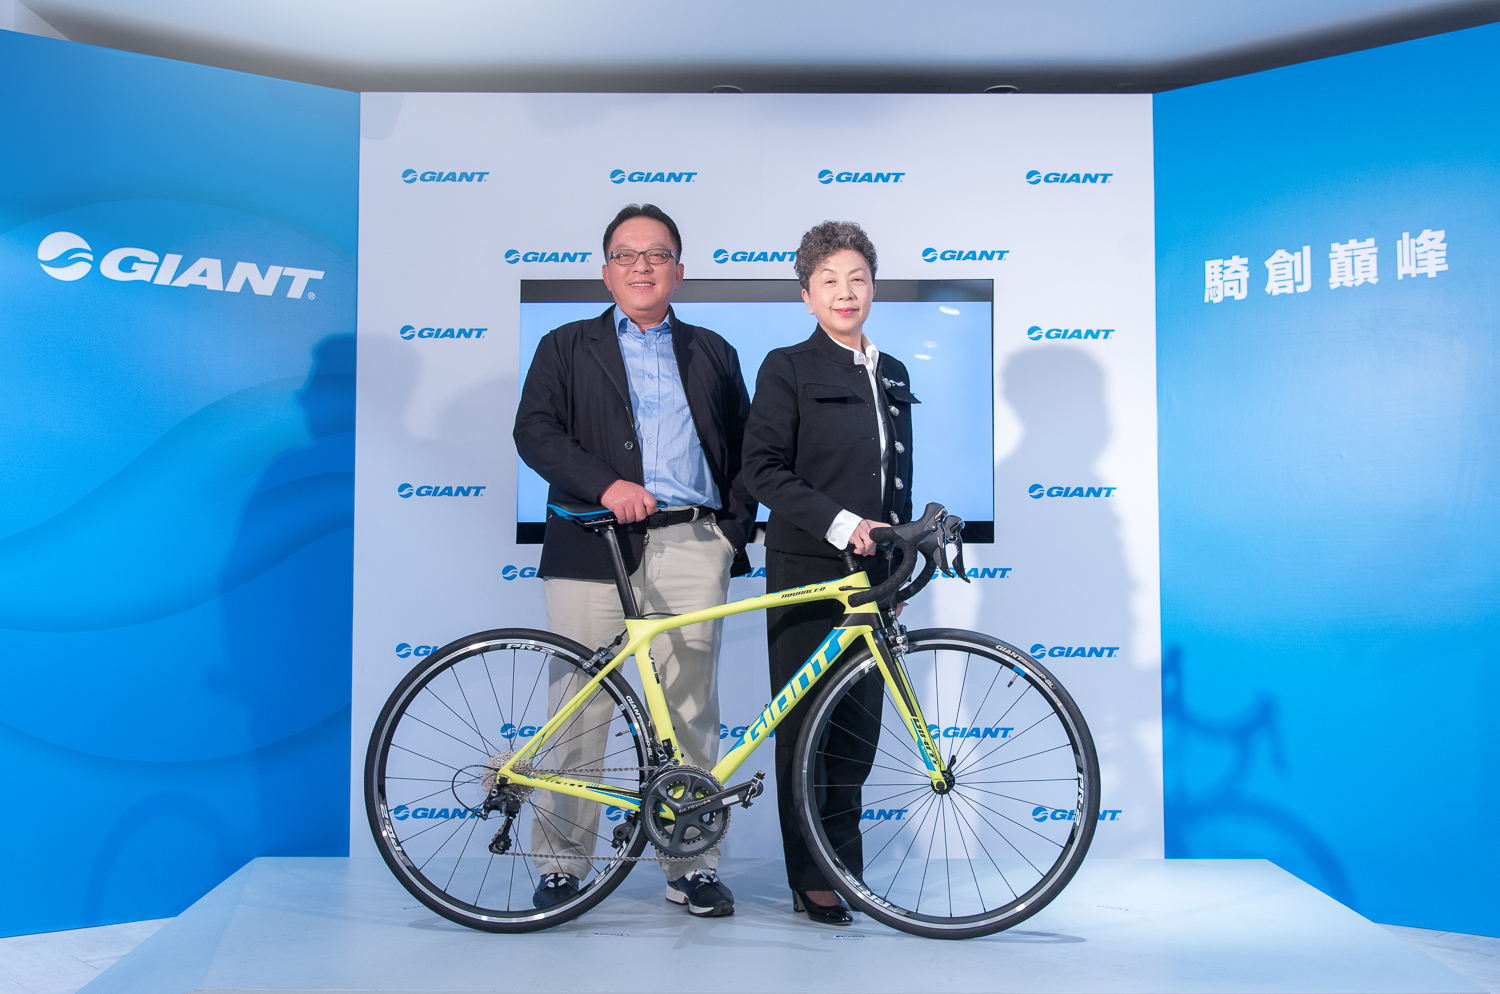 巨大公司宣布企業接班 持續引領自行車產業 騎創巔峰 捷安特 自行車 Giant Bicycles Taiwan 臺灣